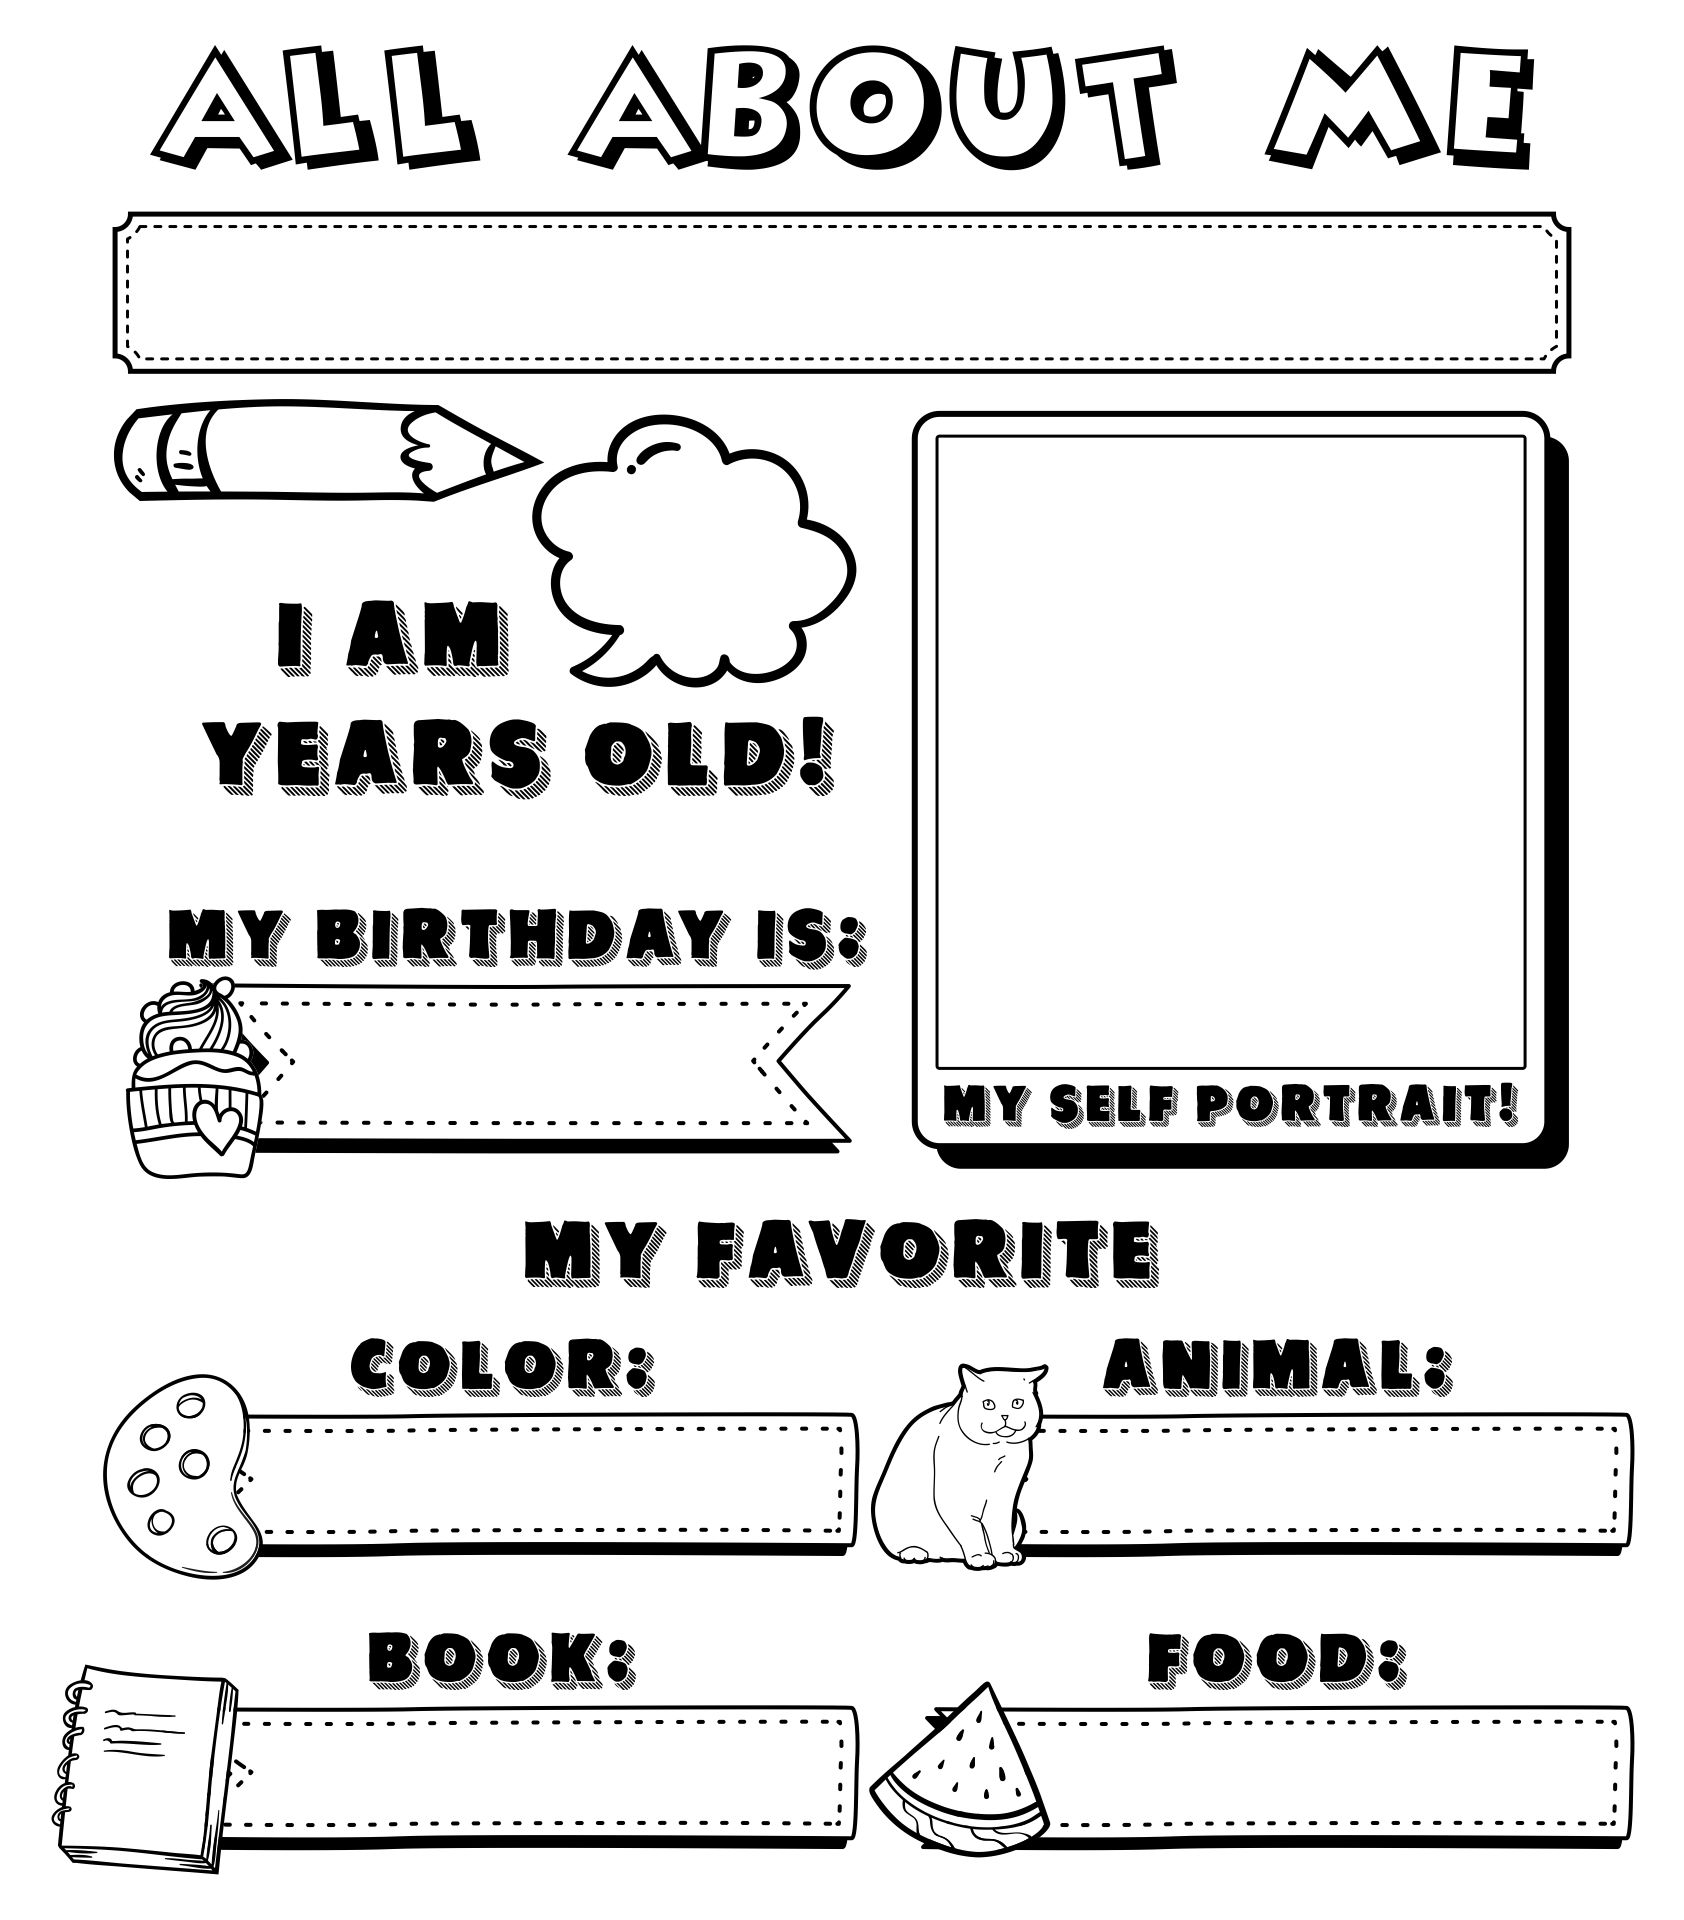 All About Me Preschool Printable Worksheet